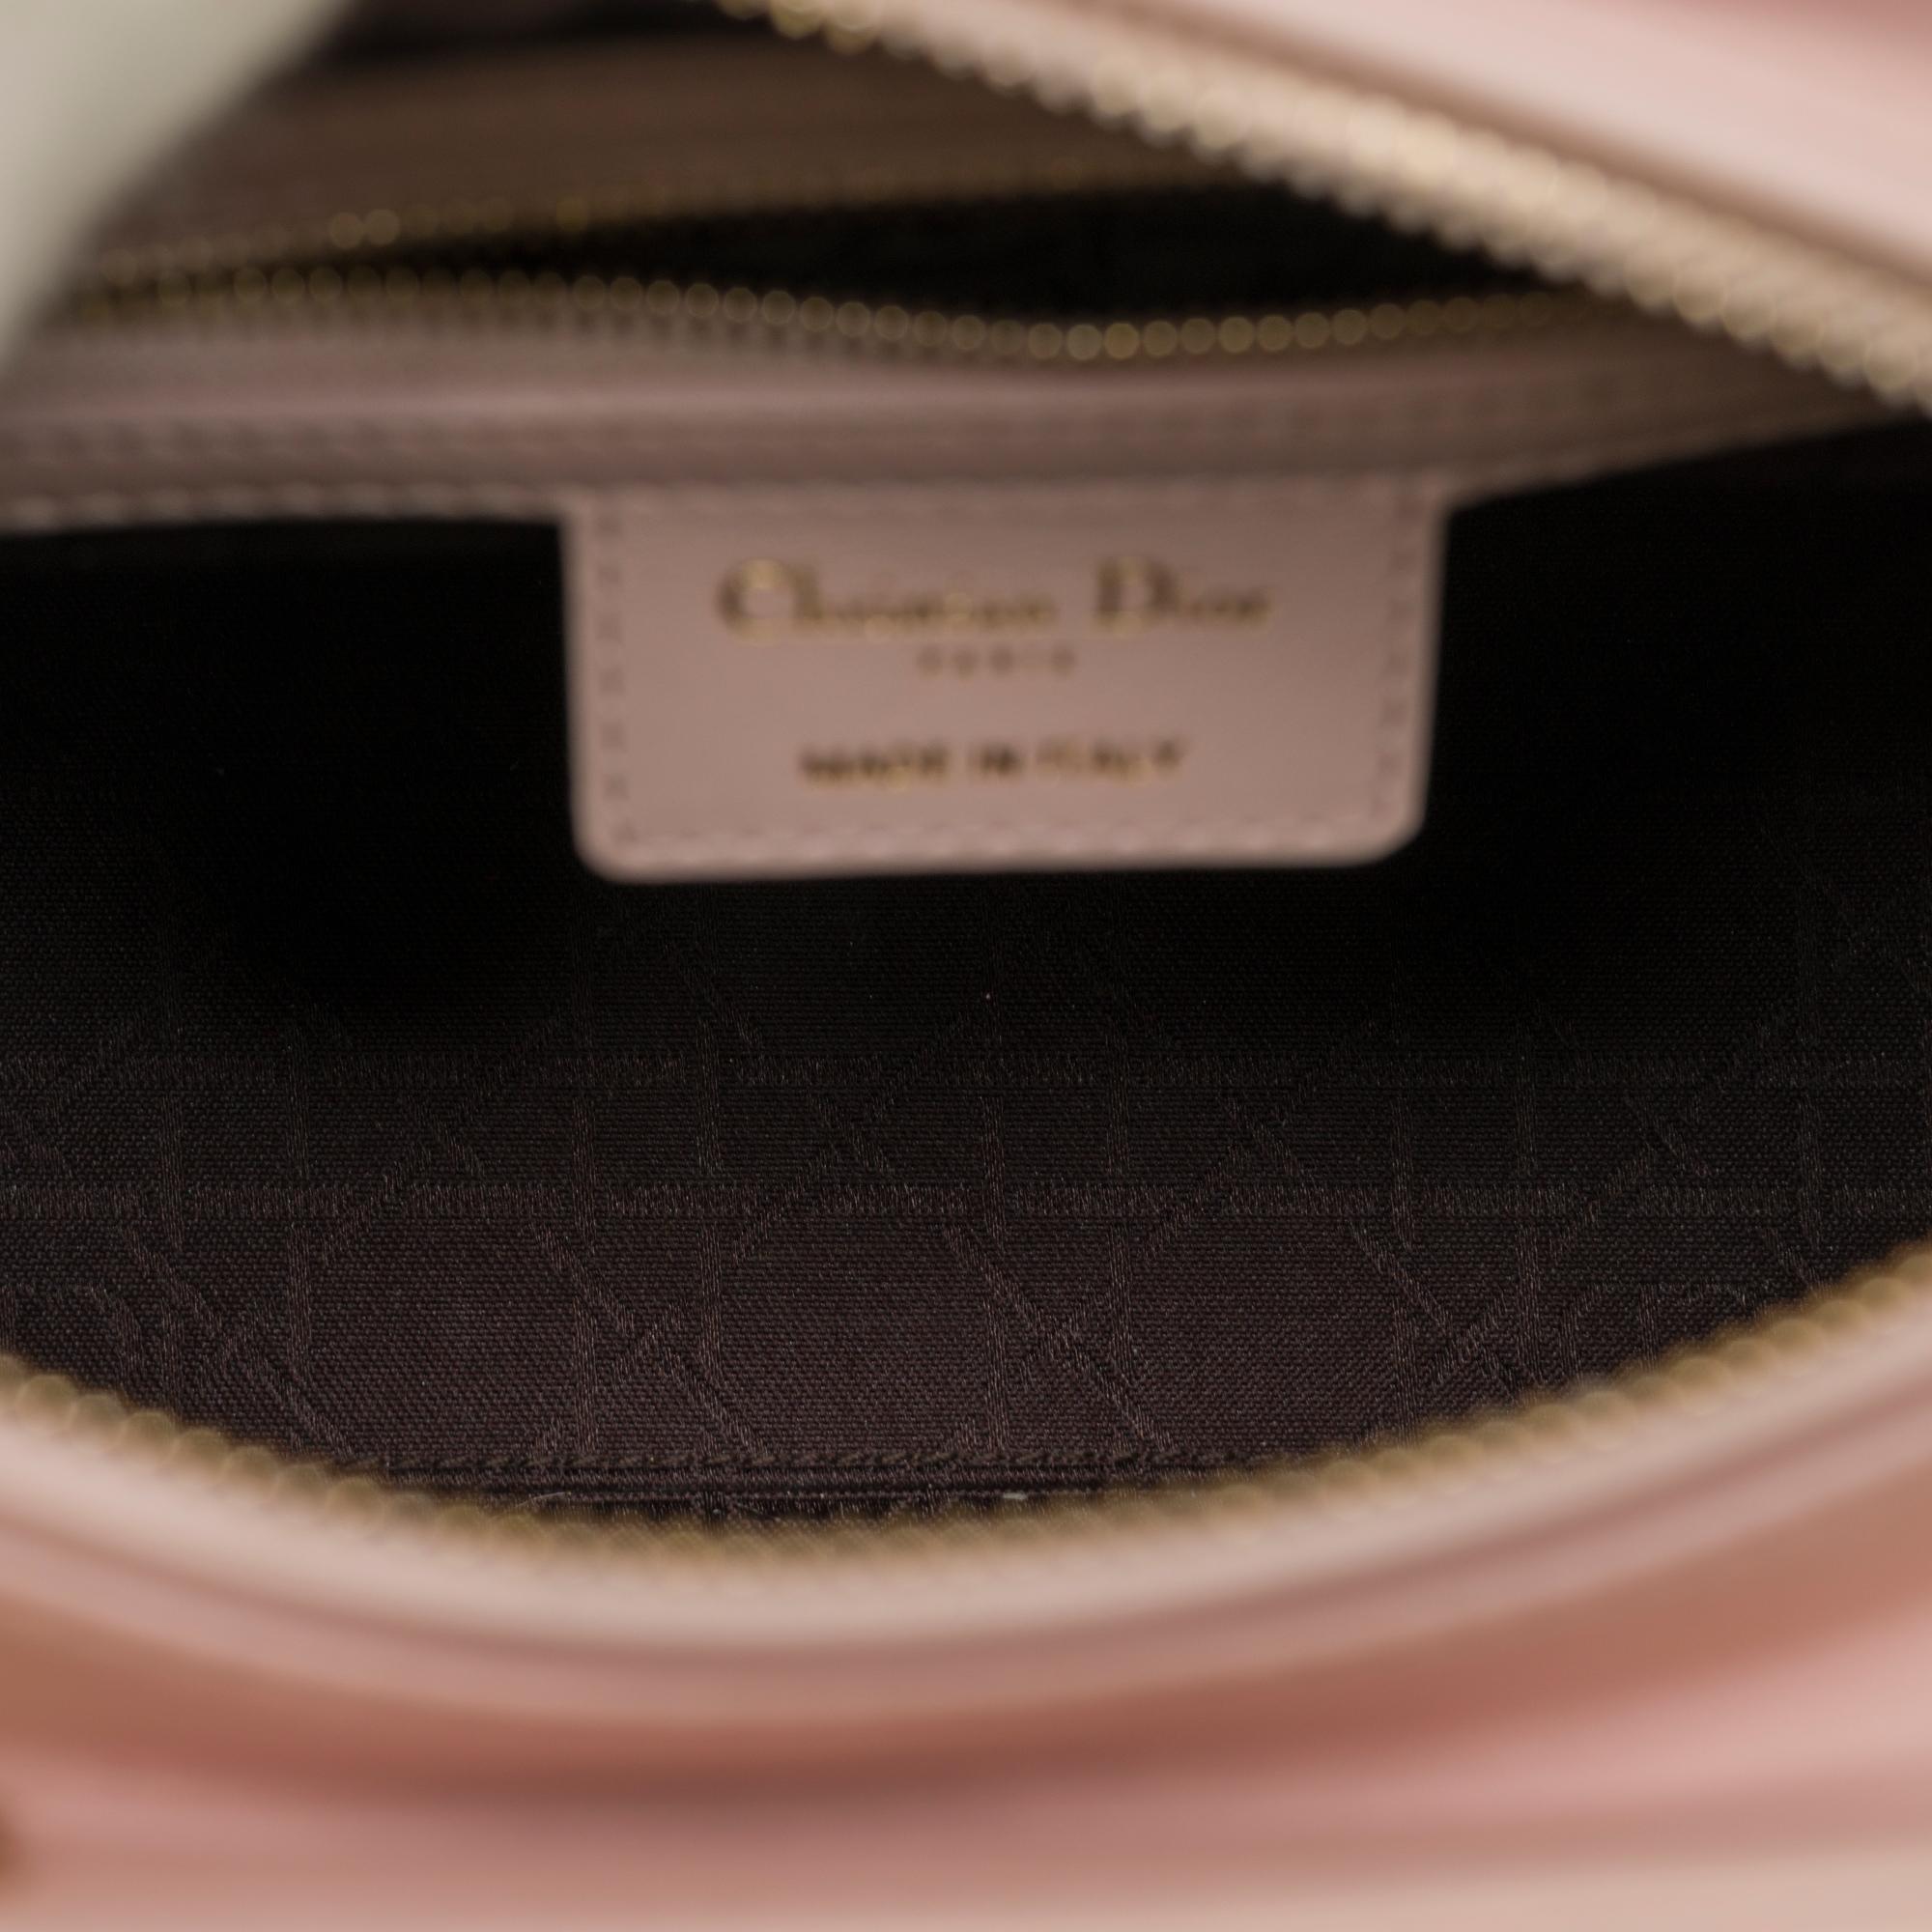  Christian Dior Lady Dior Medium size handbag in Baby Pink cannage leather, CHW 1